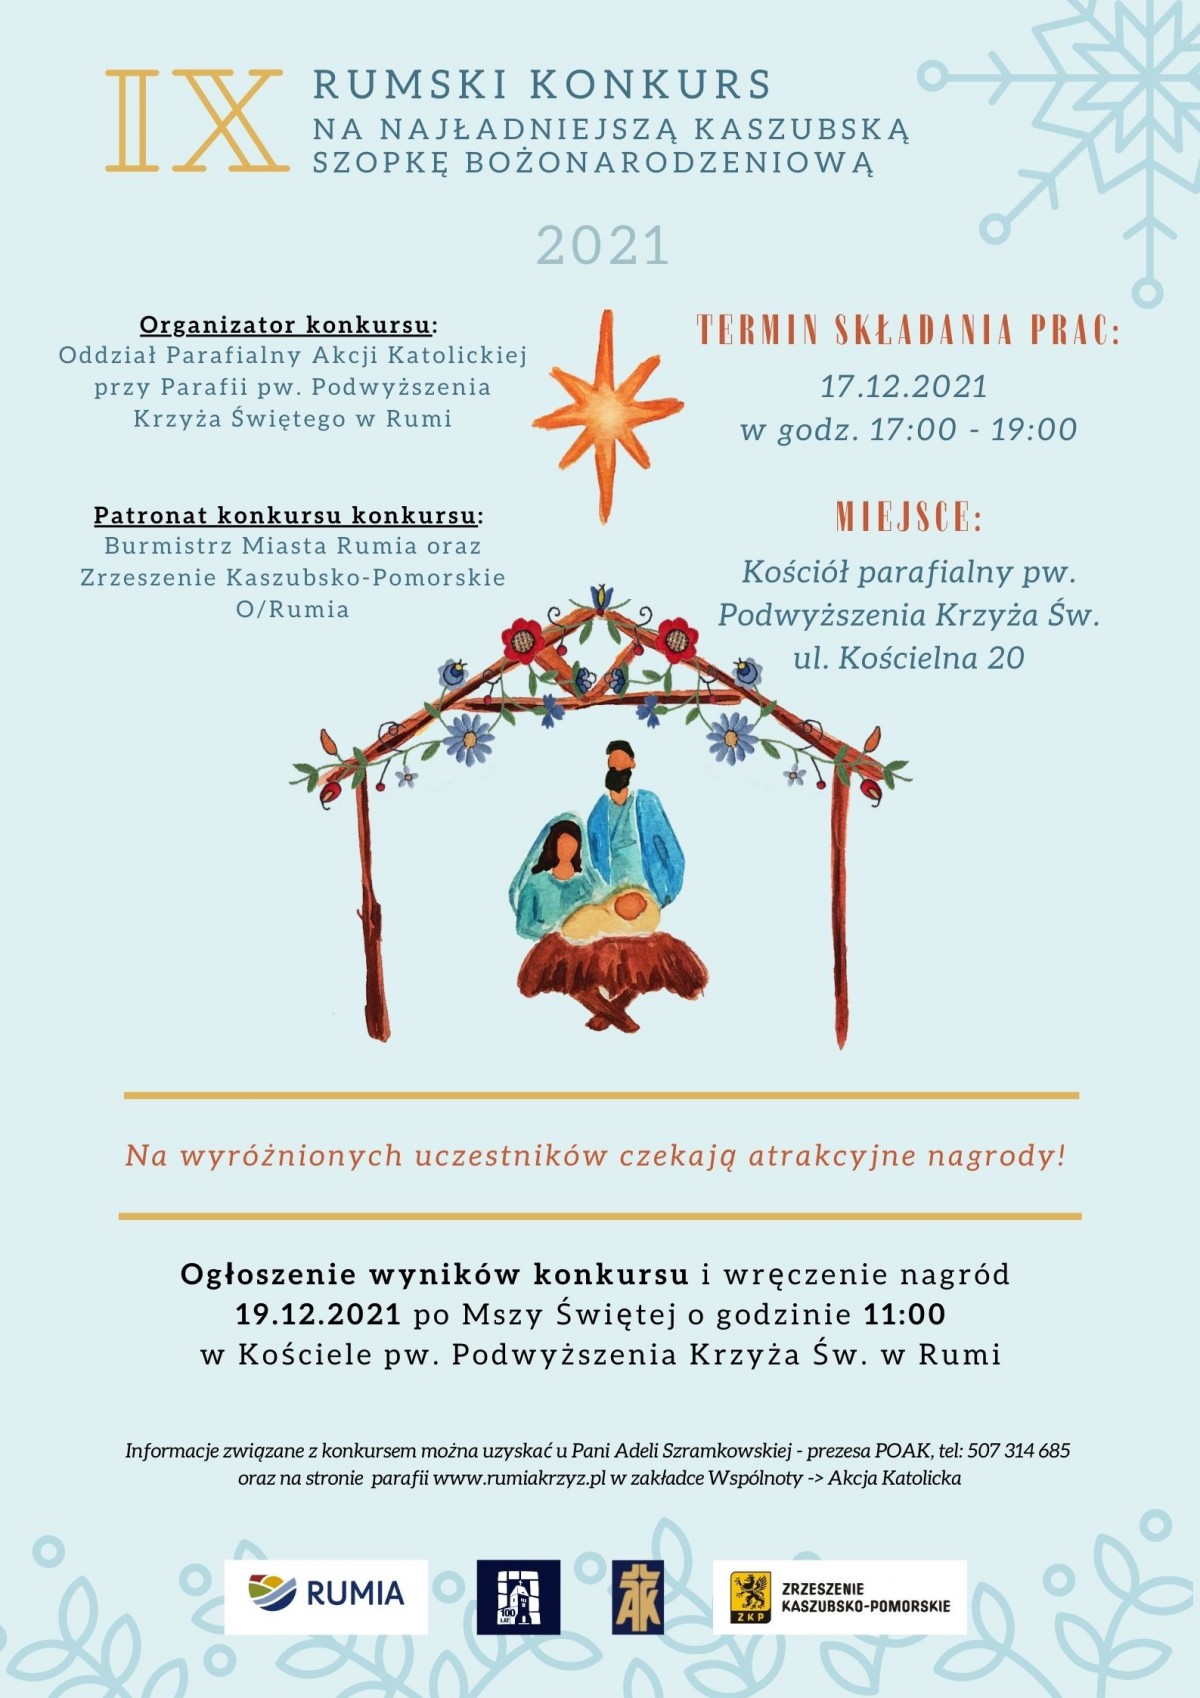 IX Rumski Konkurs na najładniejszą Kaszubską Szopkę Bożonarodzeniową